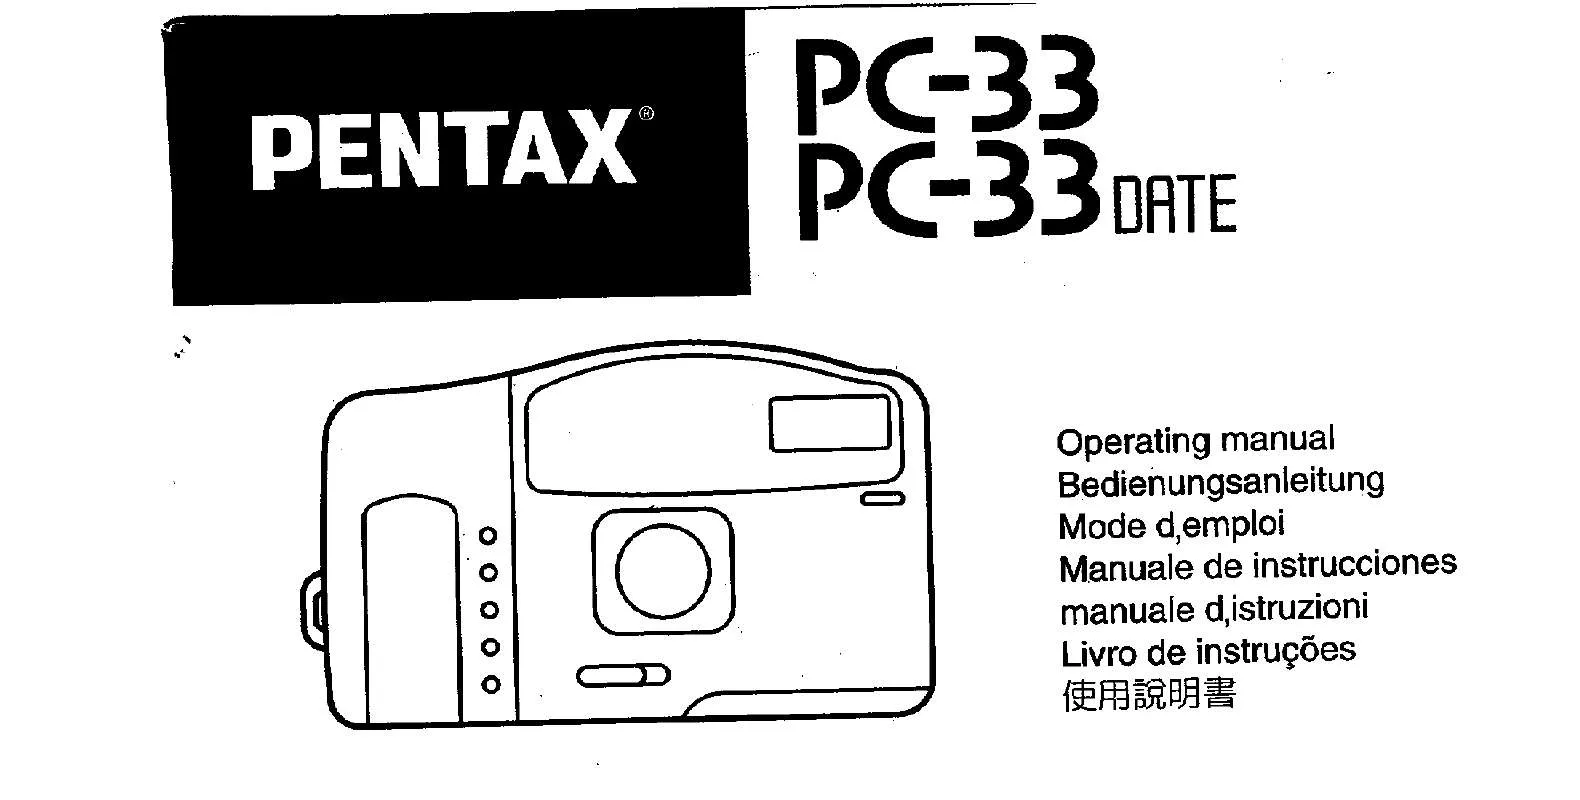 Mode d'emploi PENTAX PC33